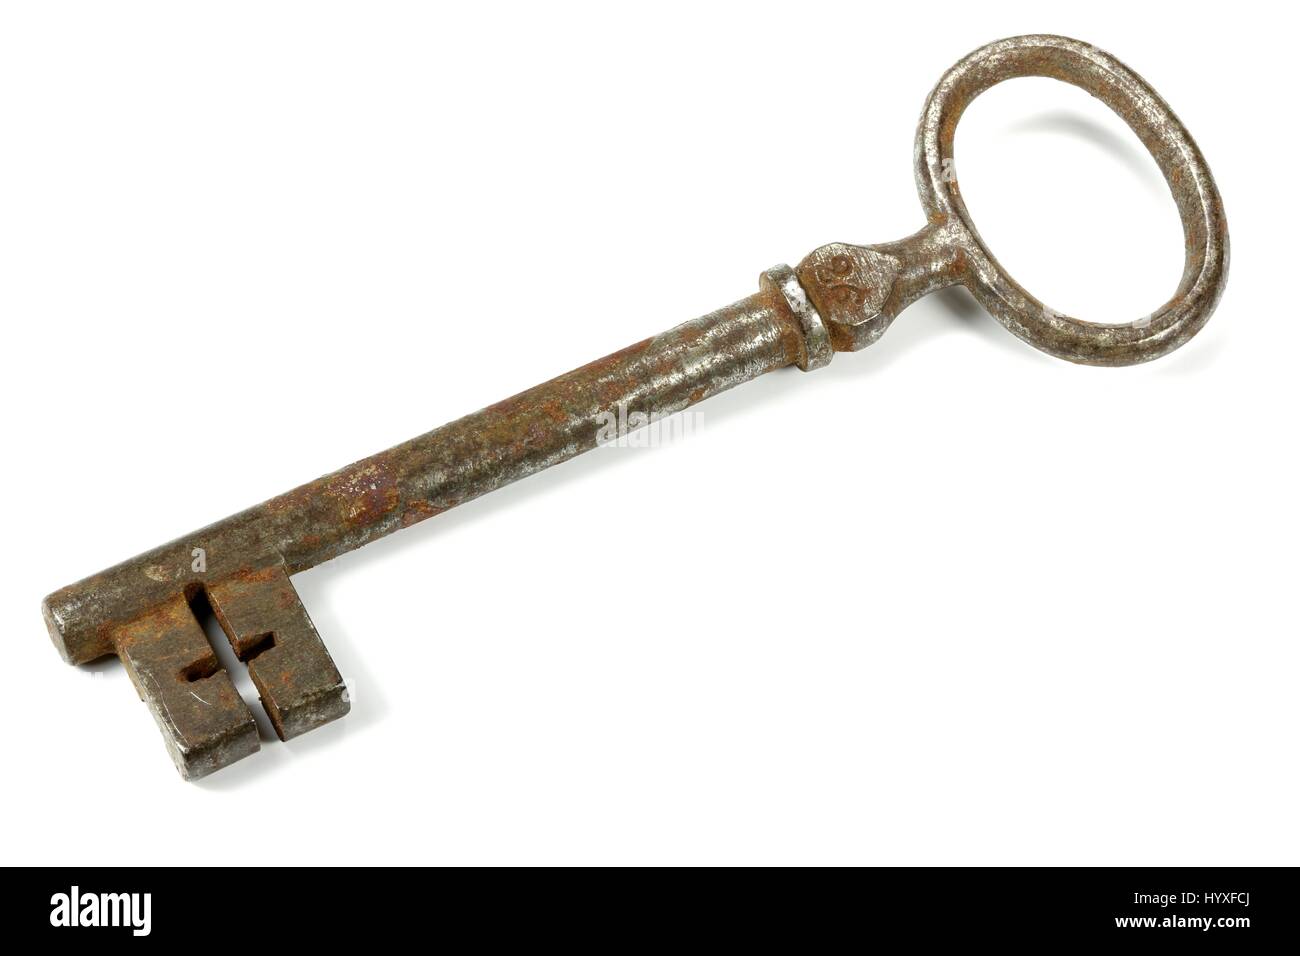 antique key isolated on white background Stock Photo